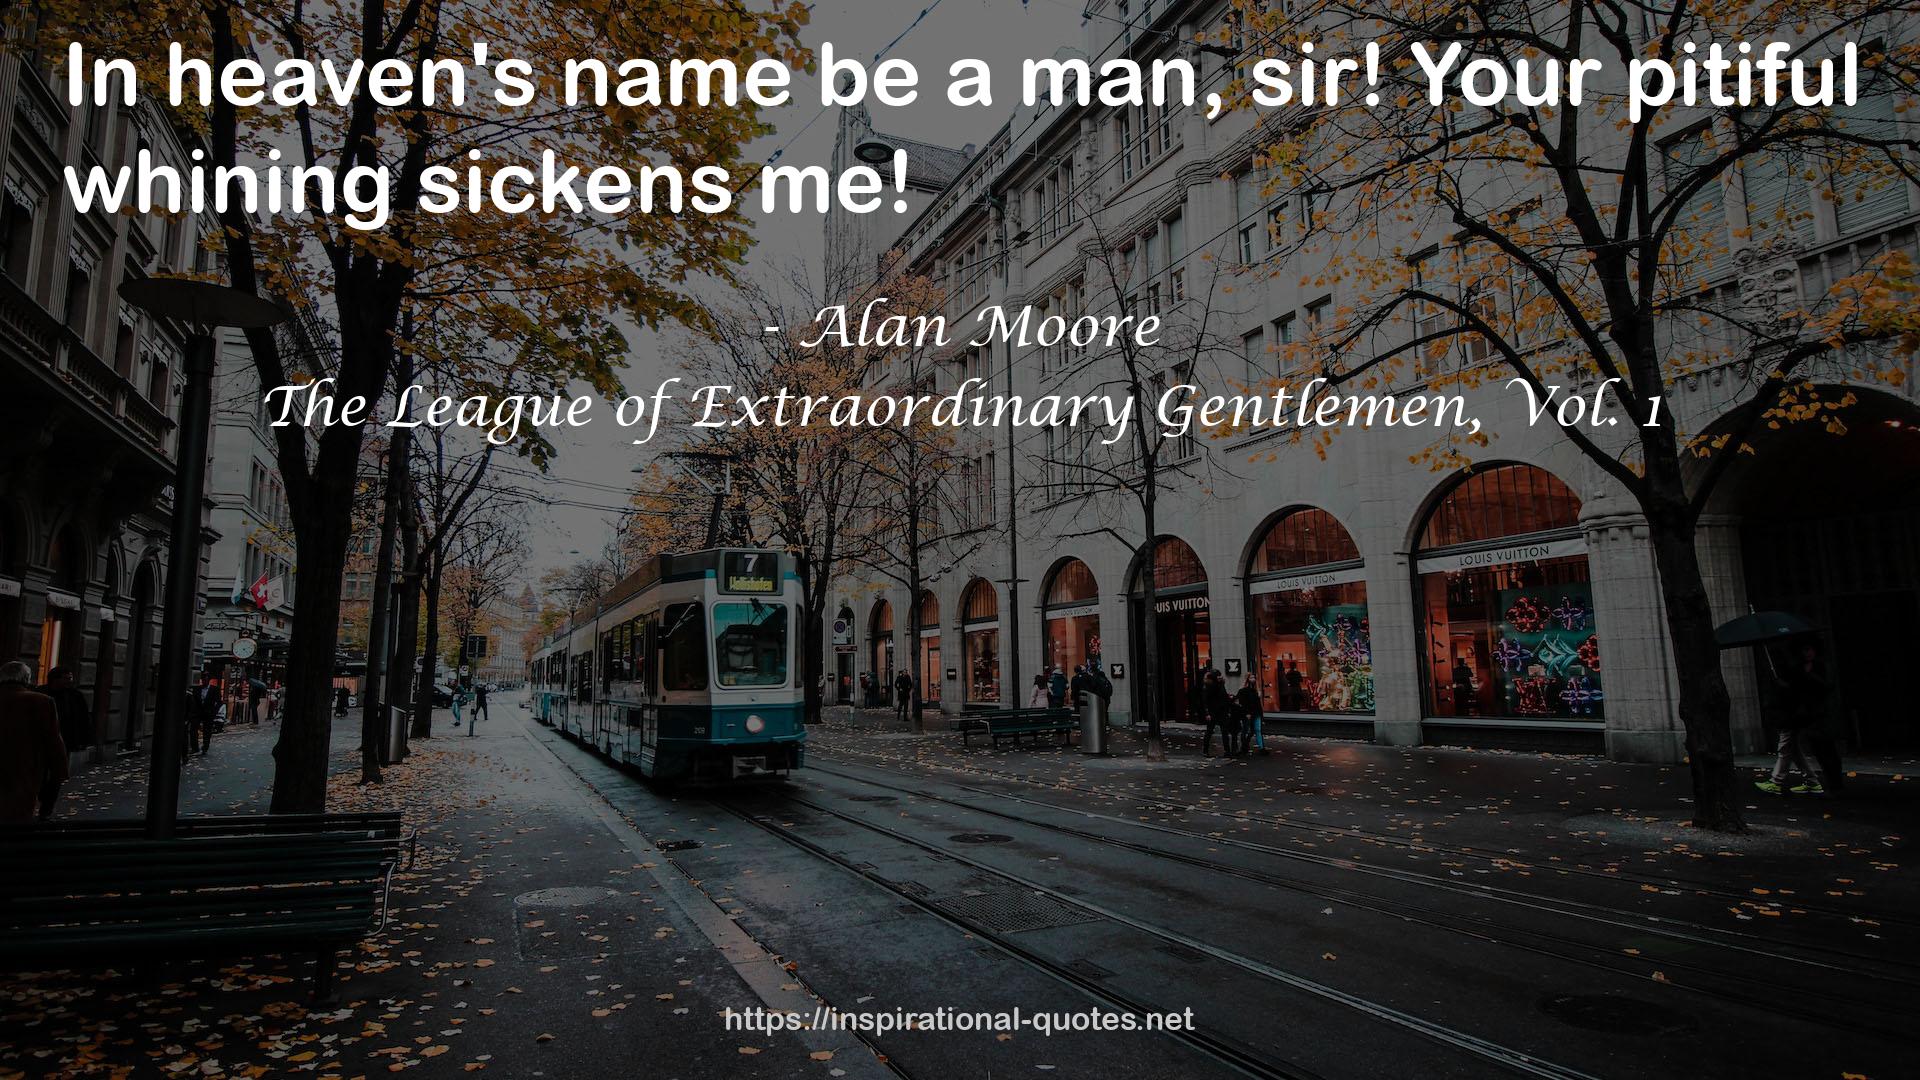 The League of Extraordinary Gentlemen, Vol. 1 QUOTES